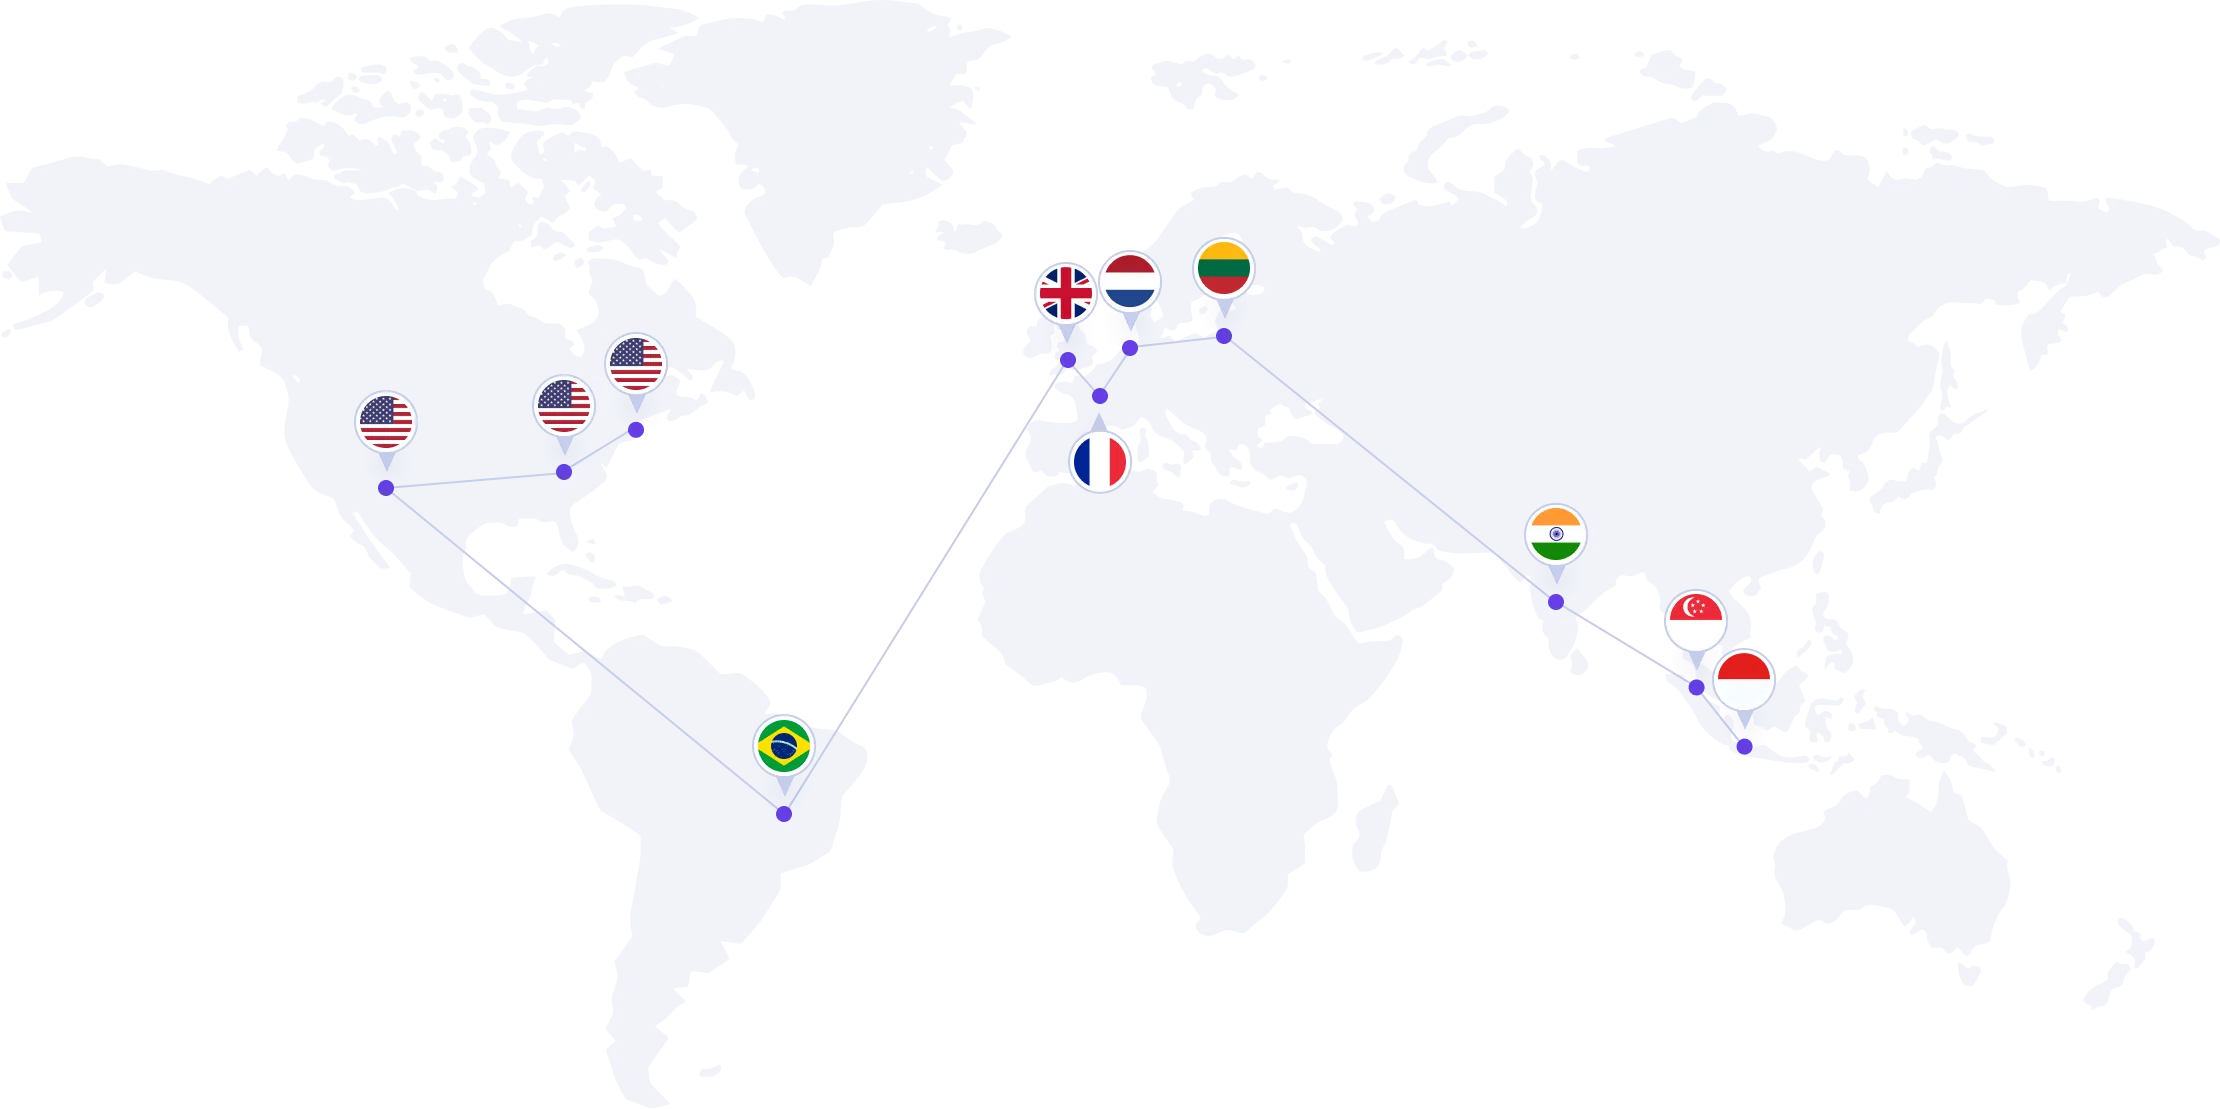 Centros de datos alrededor del mundo